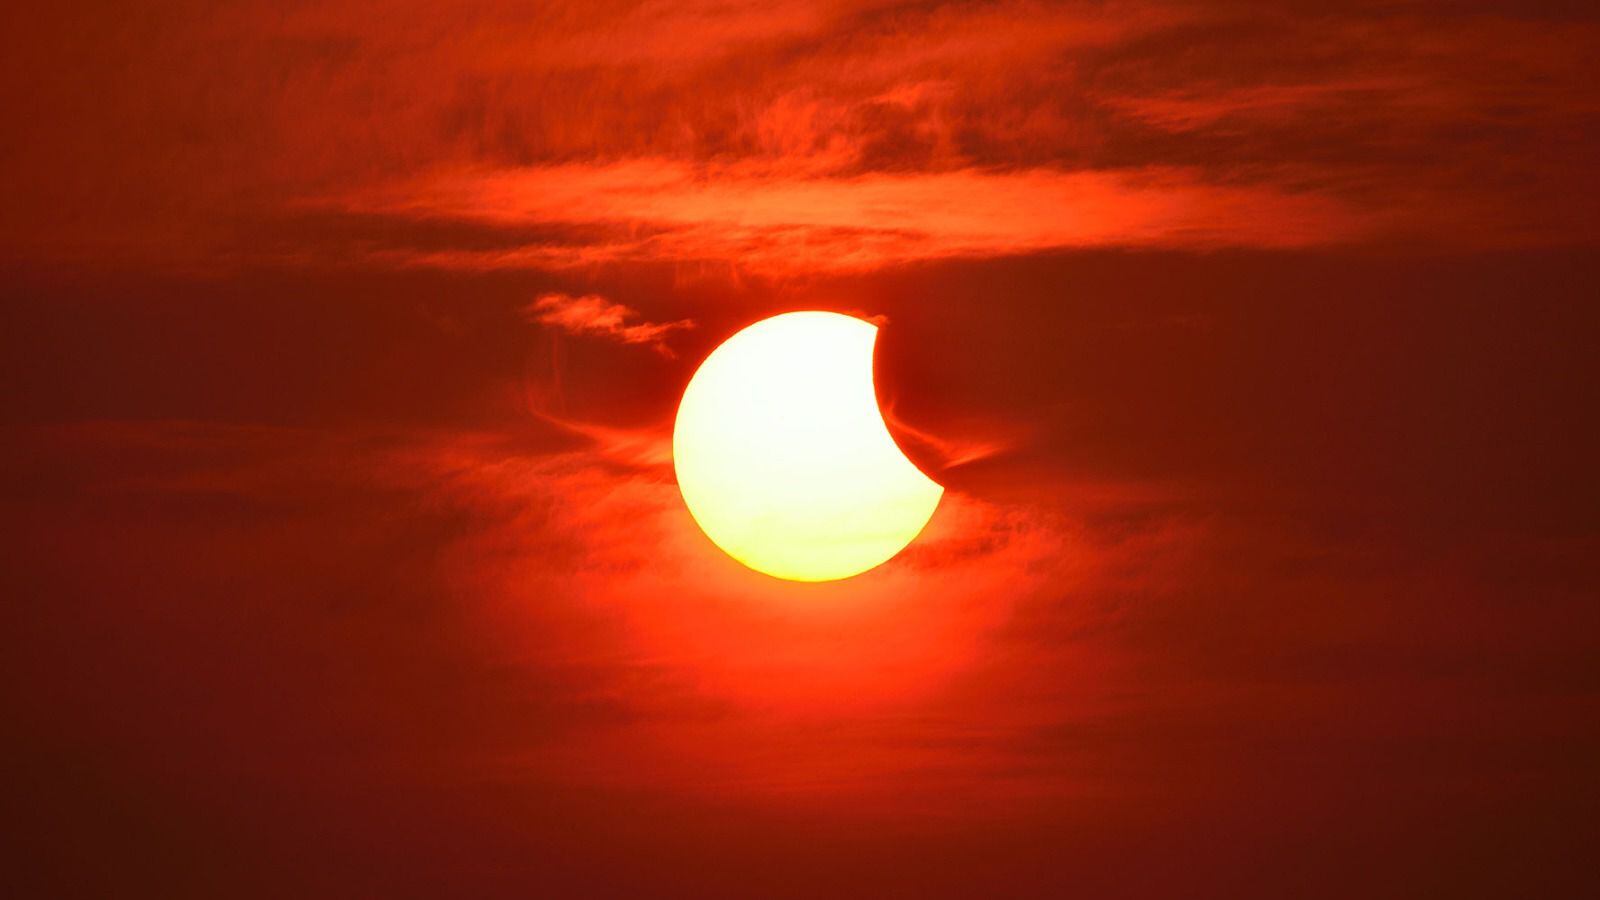 La fase parcial ocurre cuando la Luna pasa entre el Sol y la Tierra; no cubre al Sol por completo. (Shutterstock)